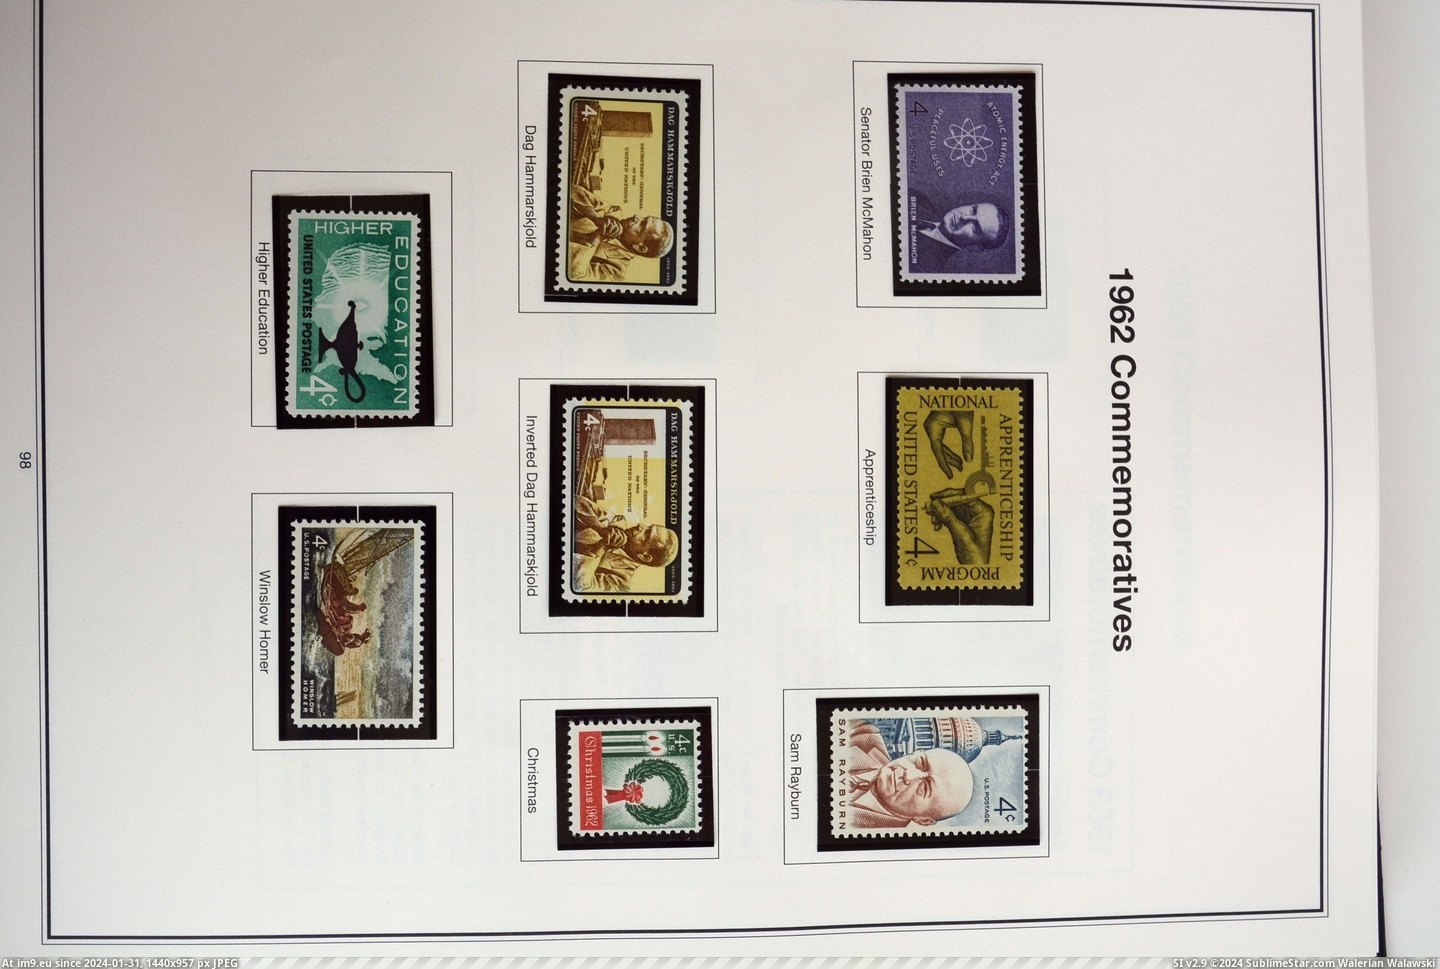  #Dsc  DSC_0852 Pic. (Obraz z album Stamp Covers))